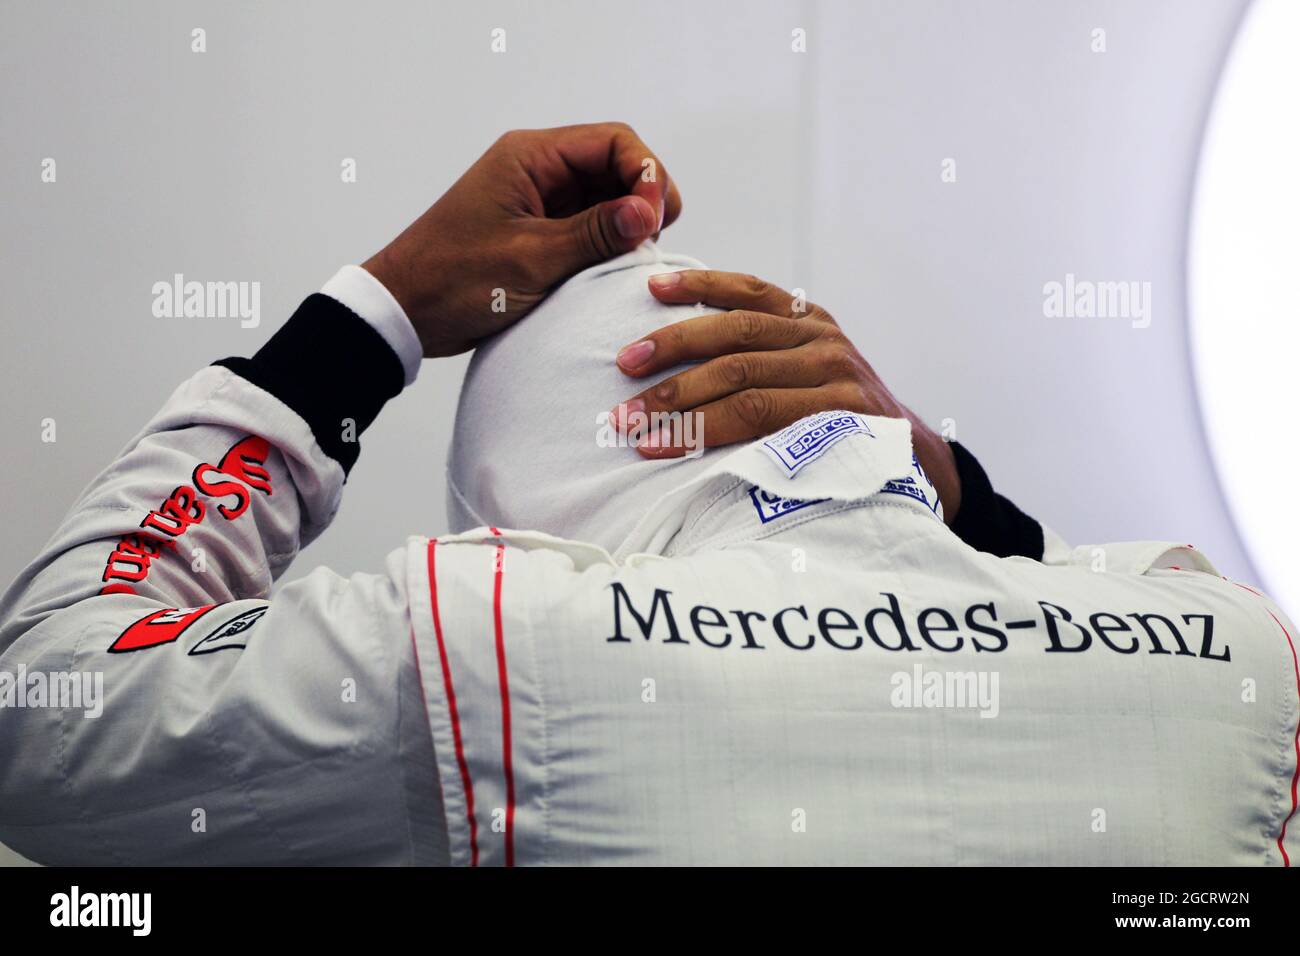 Lewis Hamilton (GBR) McLaren. Grand Prix de Belgique, vendredi 31 août 2012. Spa-Francorchamps, Belgique. Banque D'Images